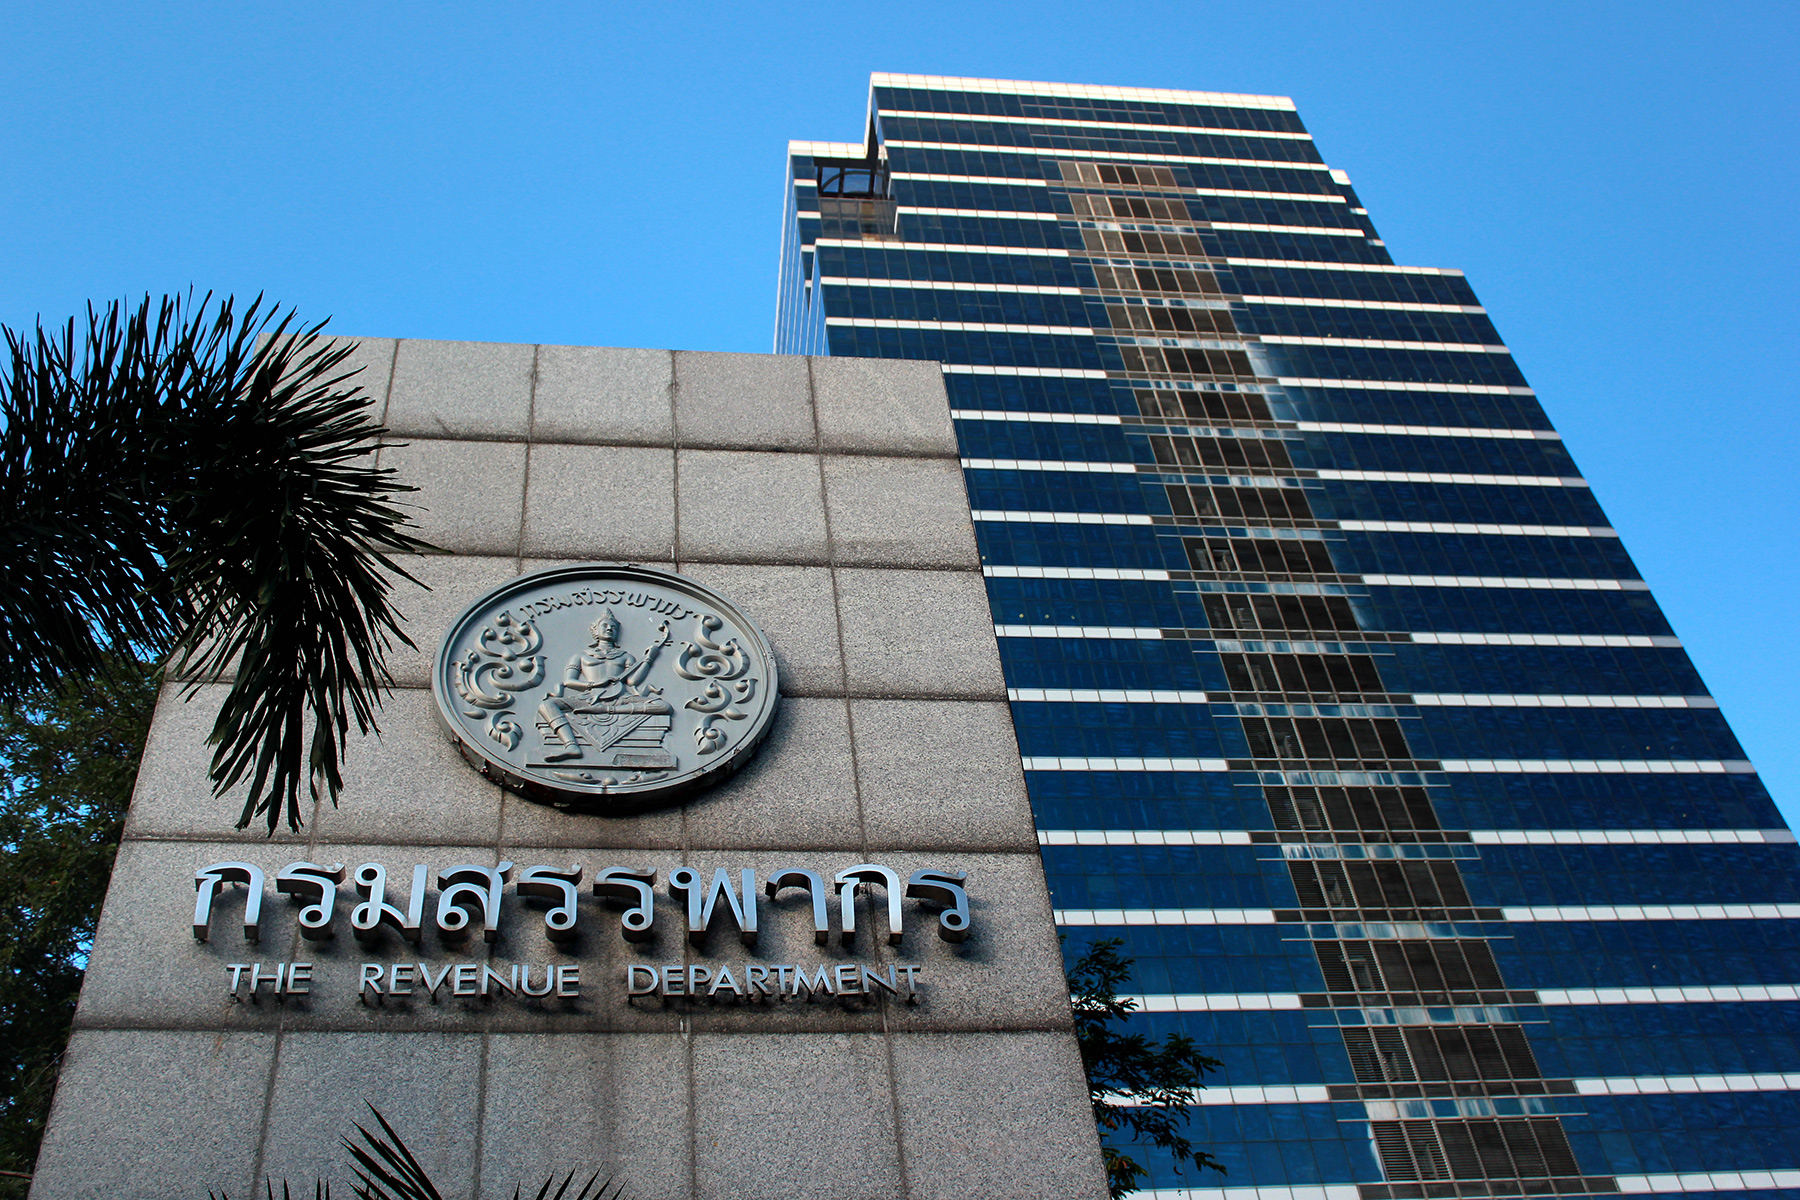 Thai Revenue Department, a large concrete building

